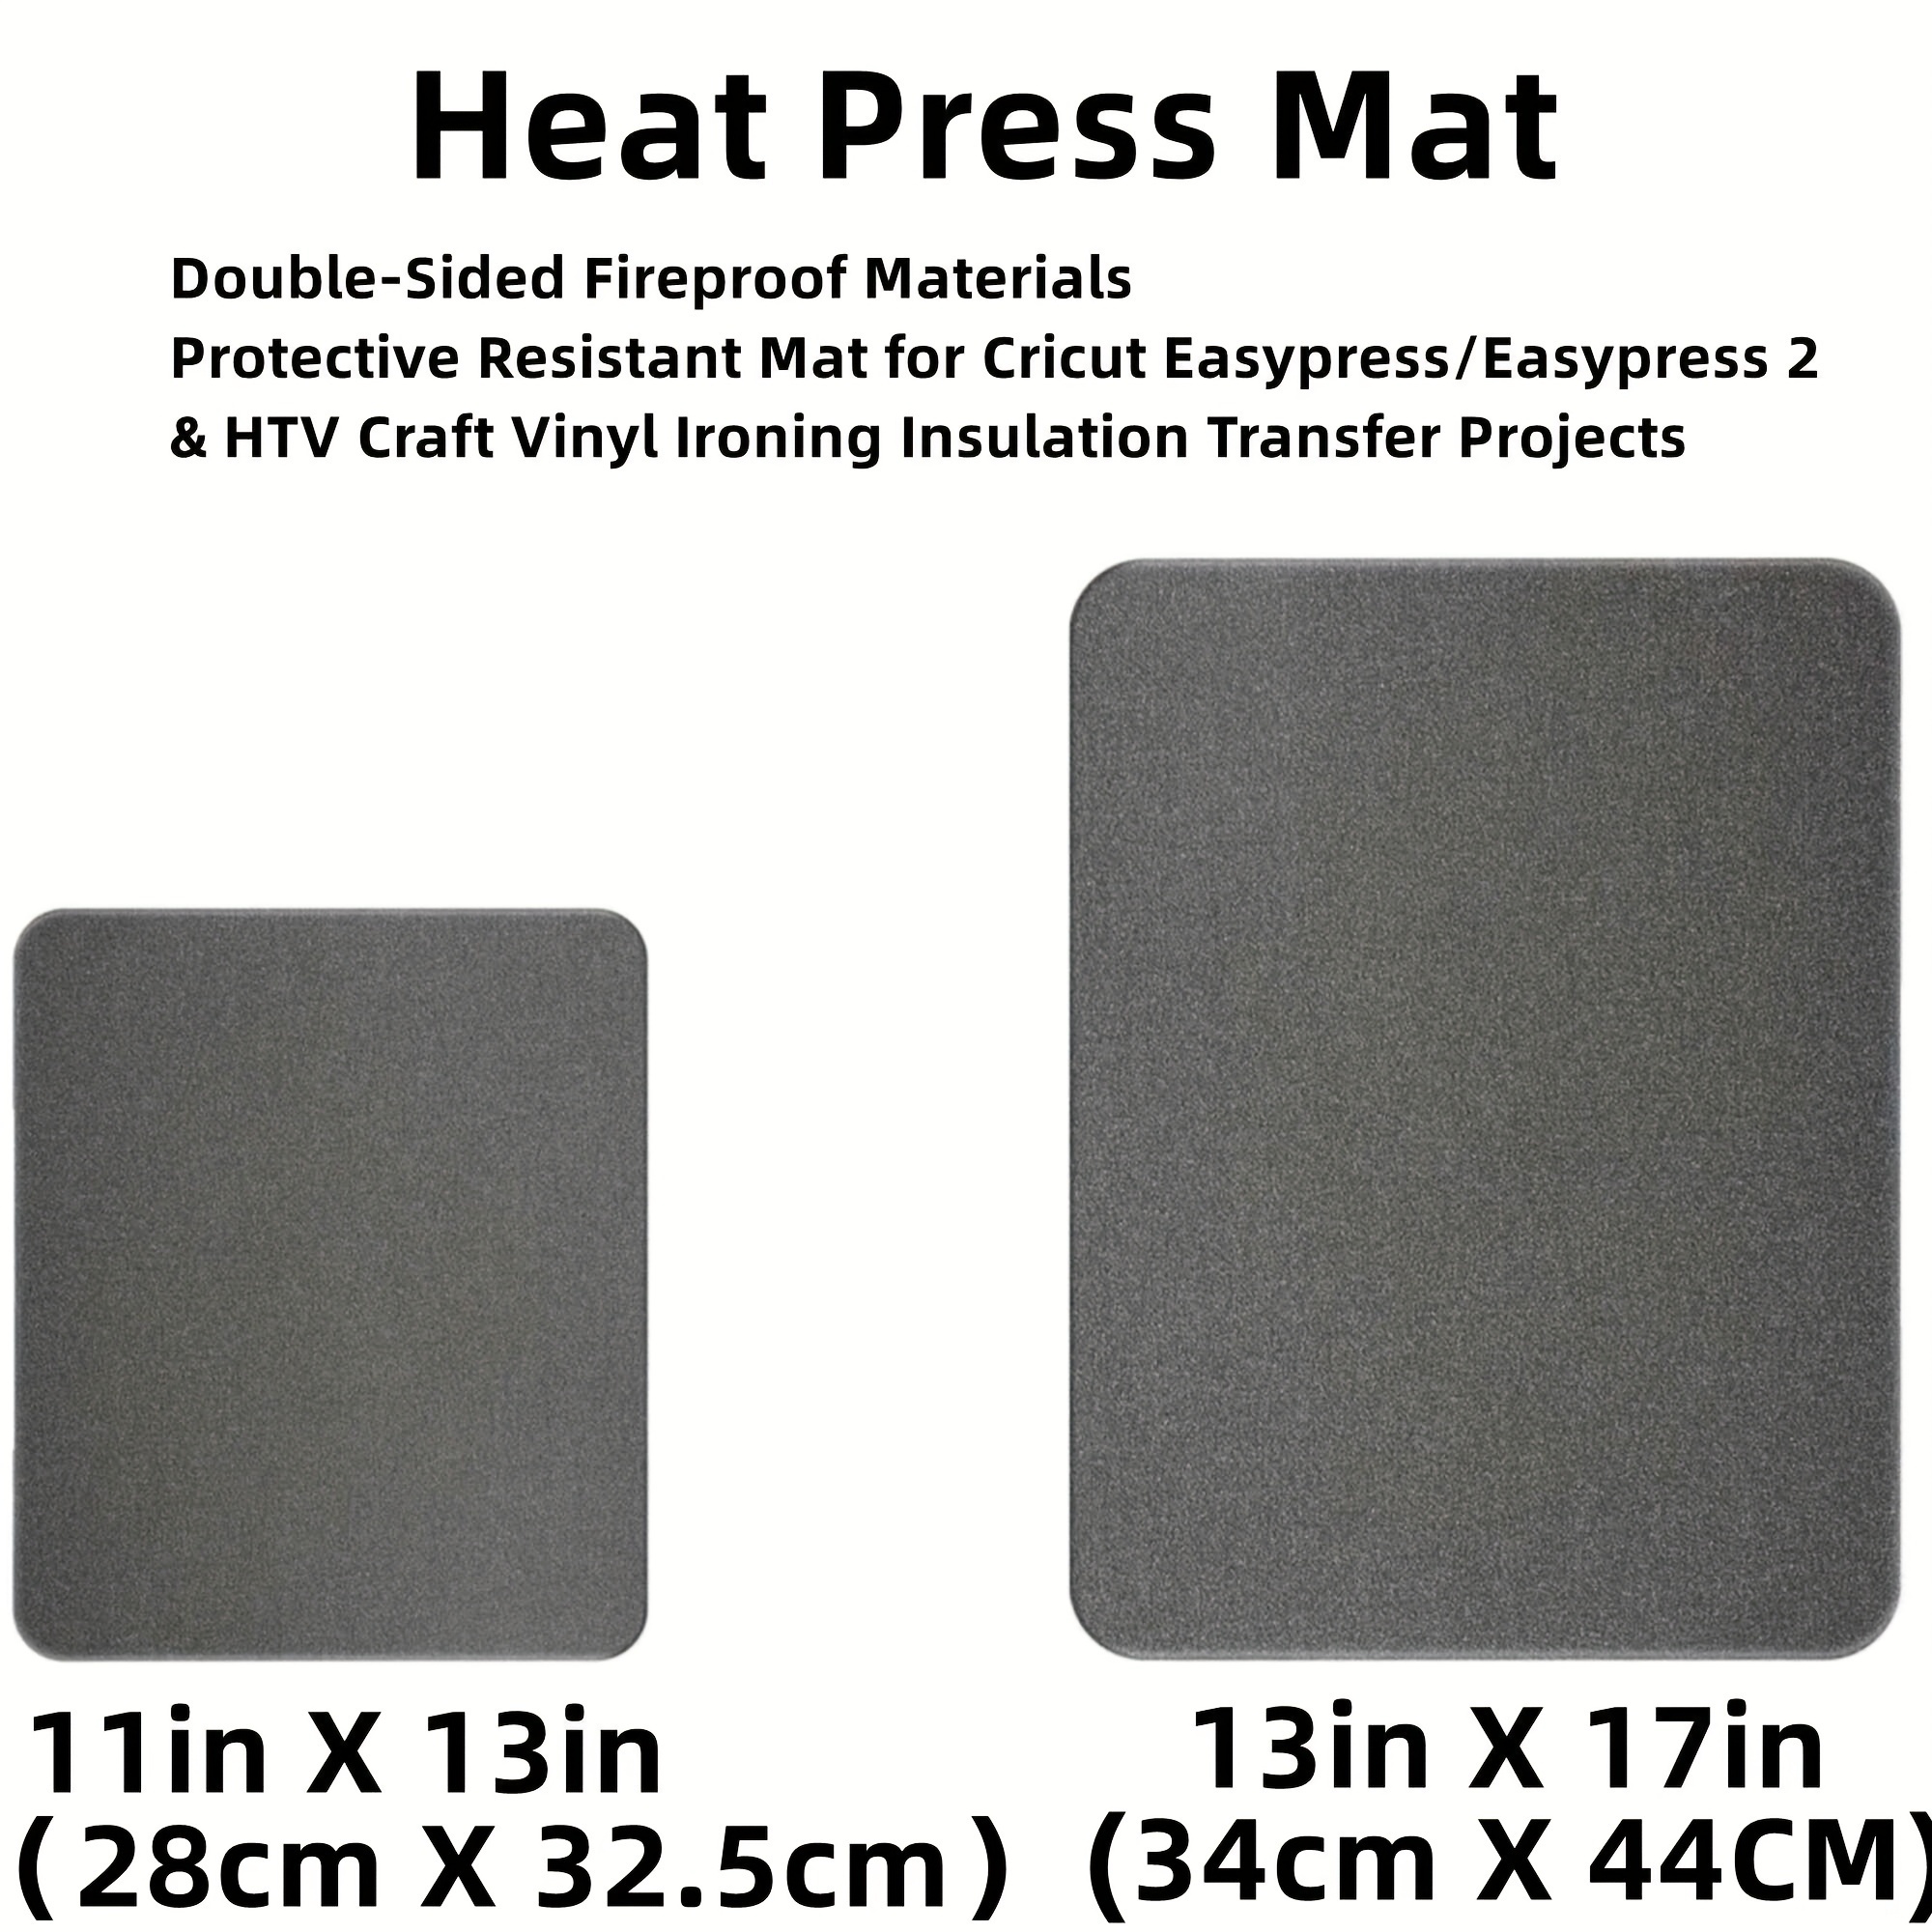 Heat Press Supplies - Temu Australia